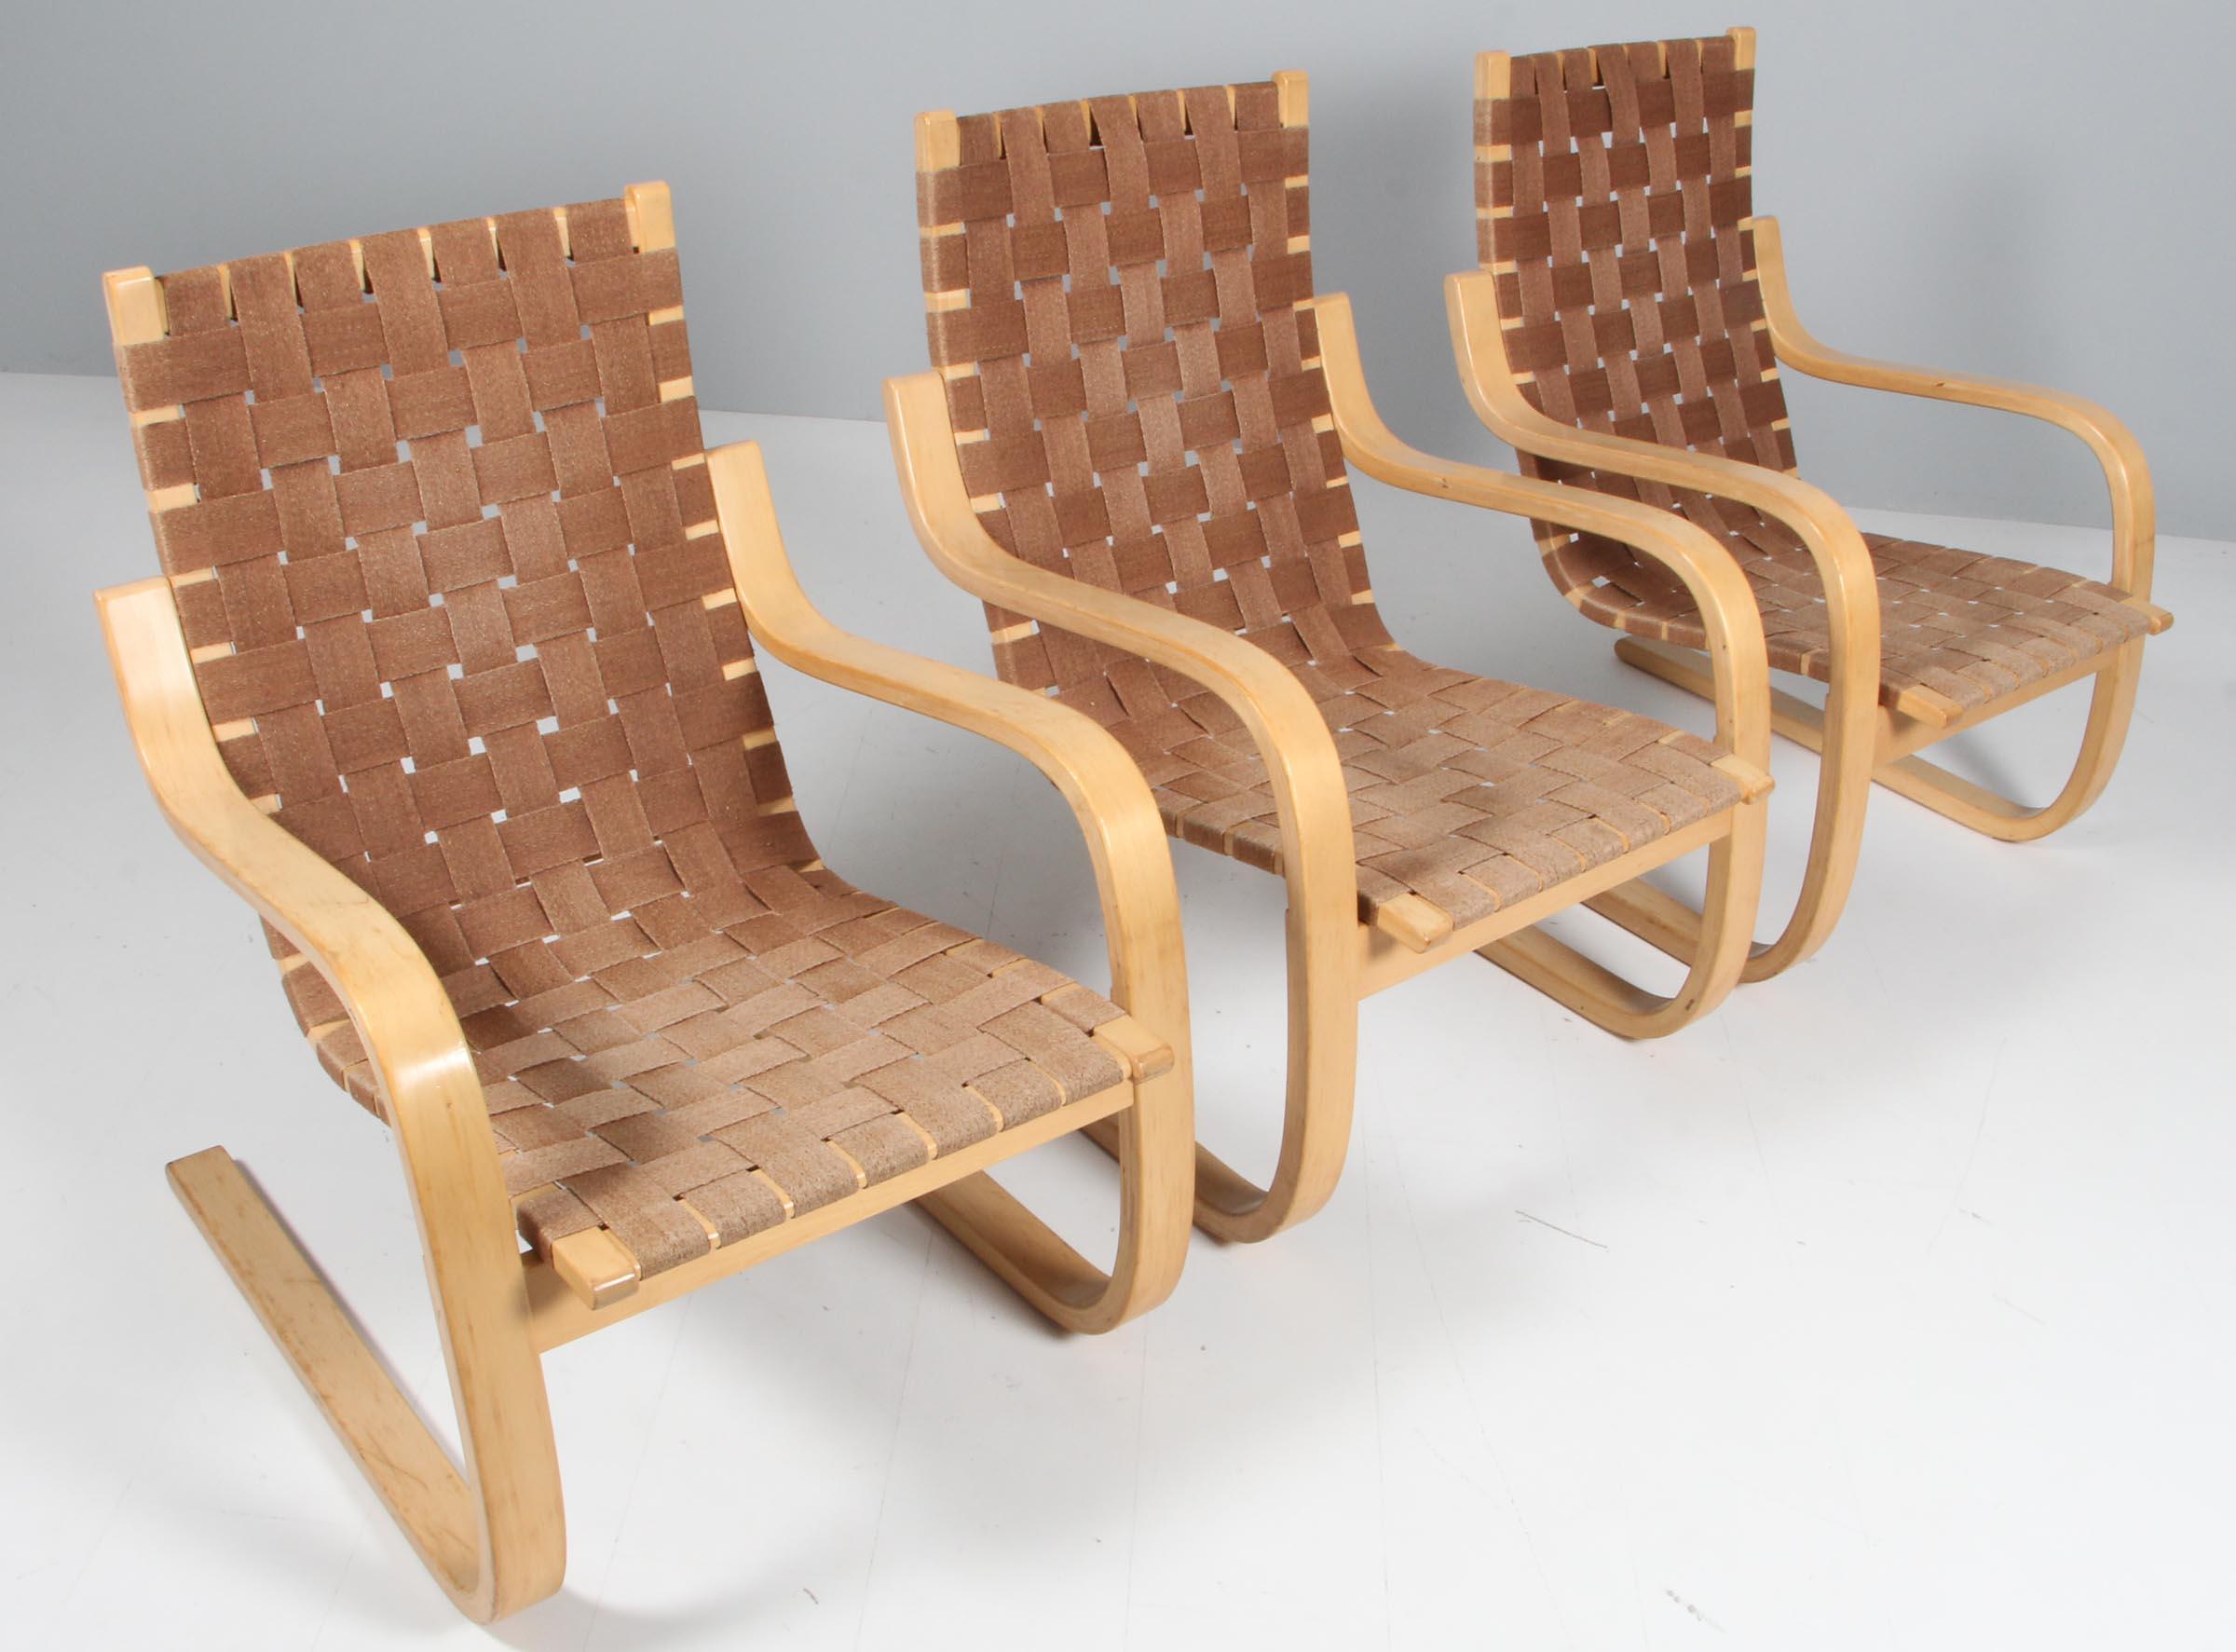 Sessel nach einem Entwurf von Alvar Aalto, hergestellt um 1960.

Gebogenes Birkensperrholz und geflochtene Pflanzenfasern. 

 